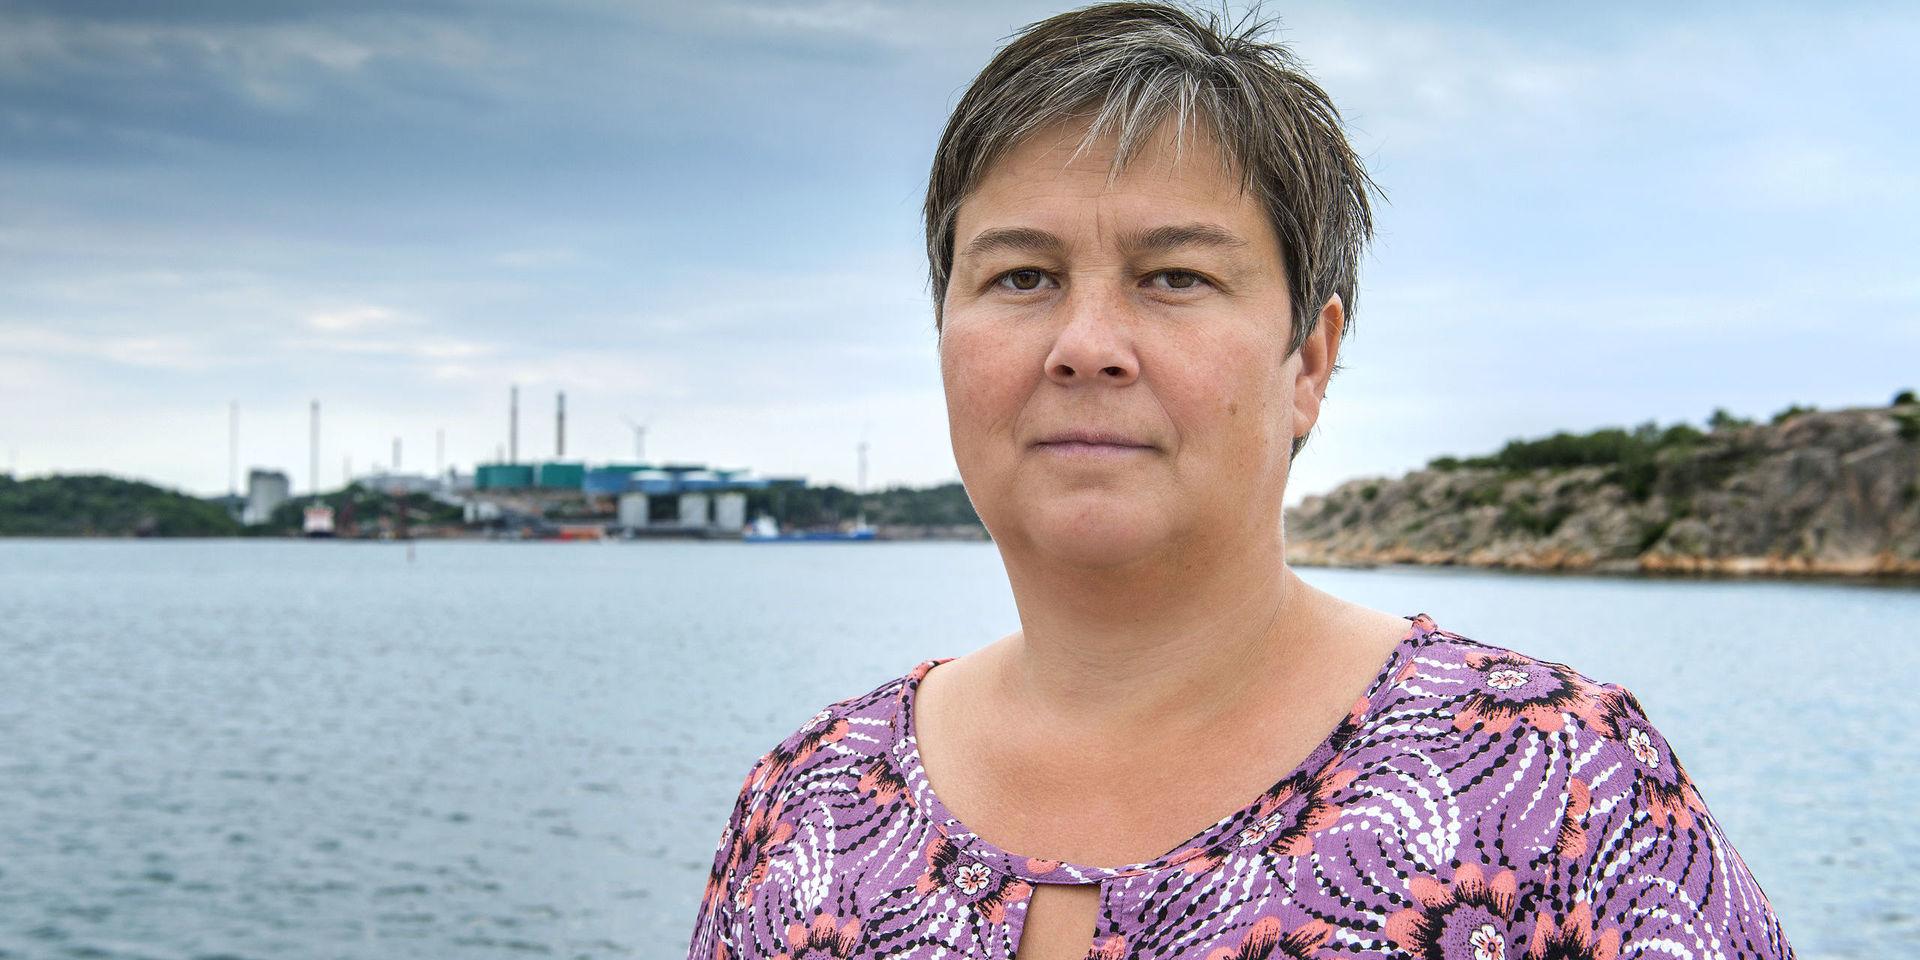 Emma Nohrén MP 1:e vice ordförande i kommunstyrelsen Lysekil före detta riksdagsledamot